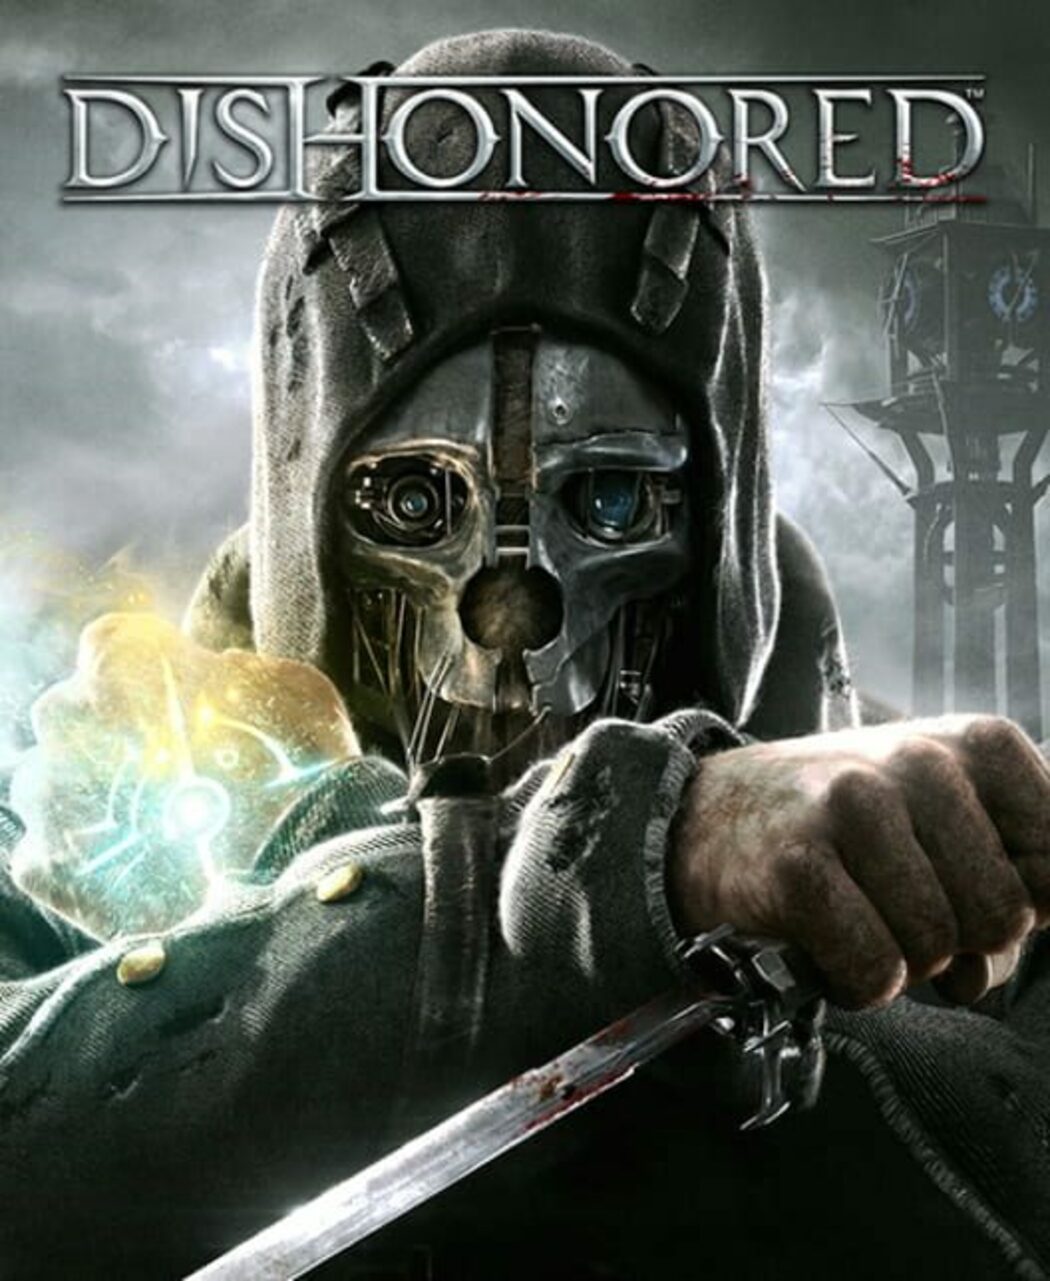 Buy Dishonored 2 Cd Key Steam Global